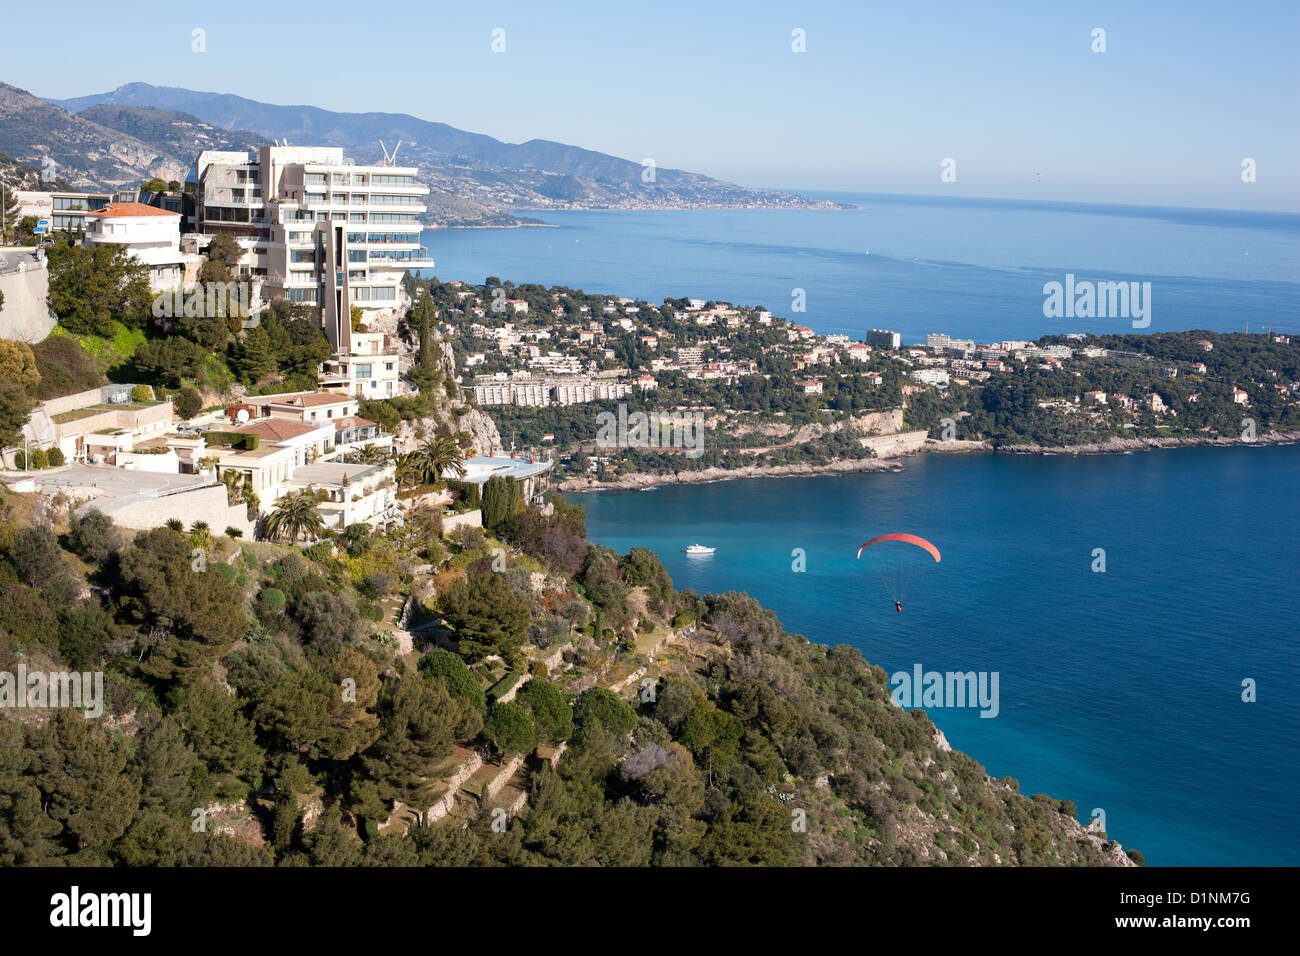 VUE AÉRIENNE.Le Vista Palace Hotel offre une vue imprenable sur la mer Méditerranée.Roquebrune-Cap-Martin, Côte d'Azur, France. Banque D'Images